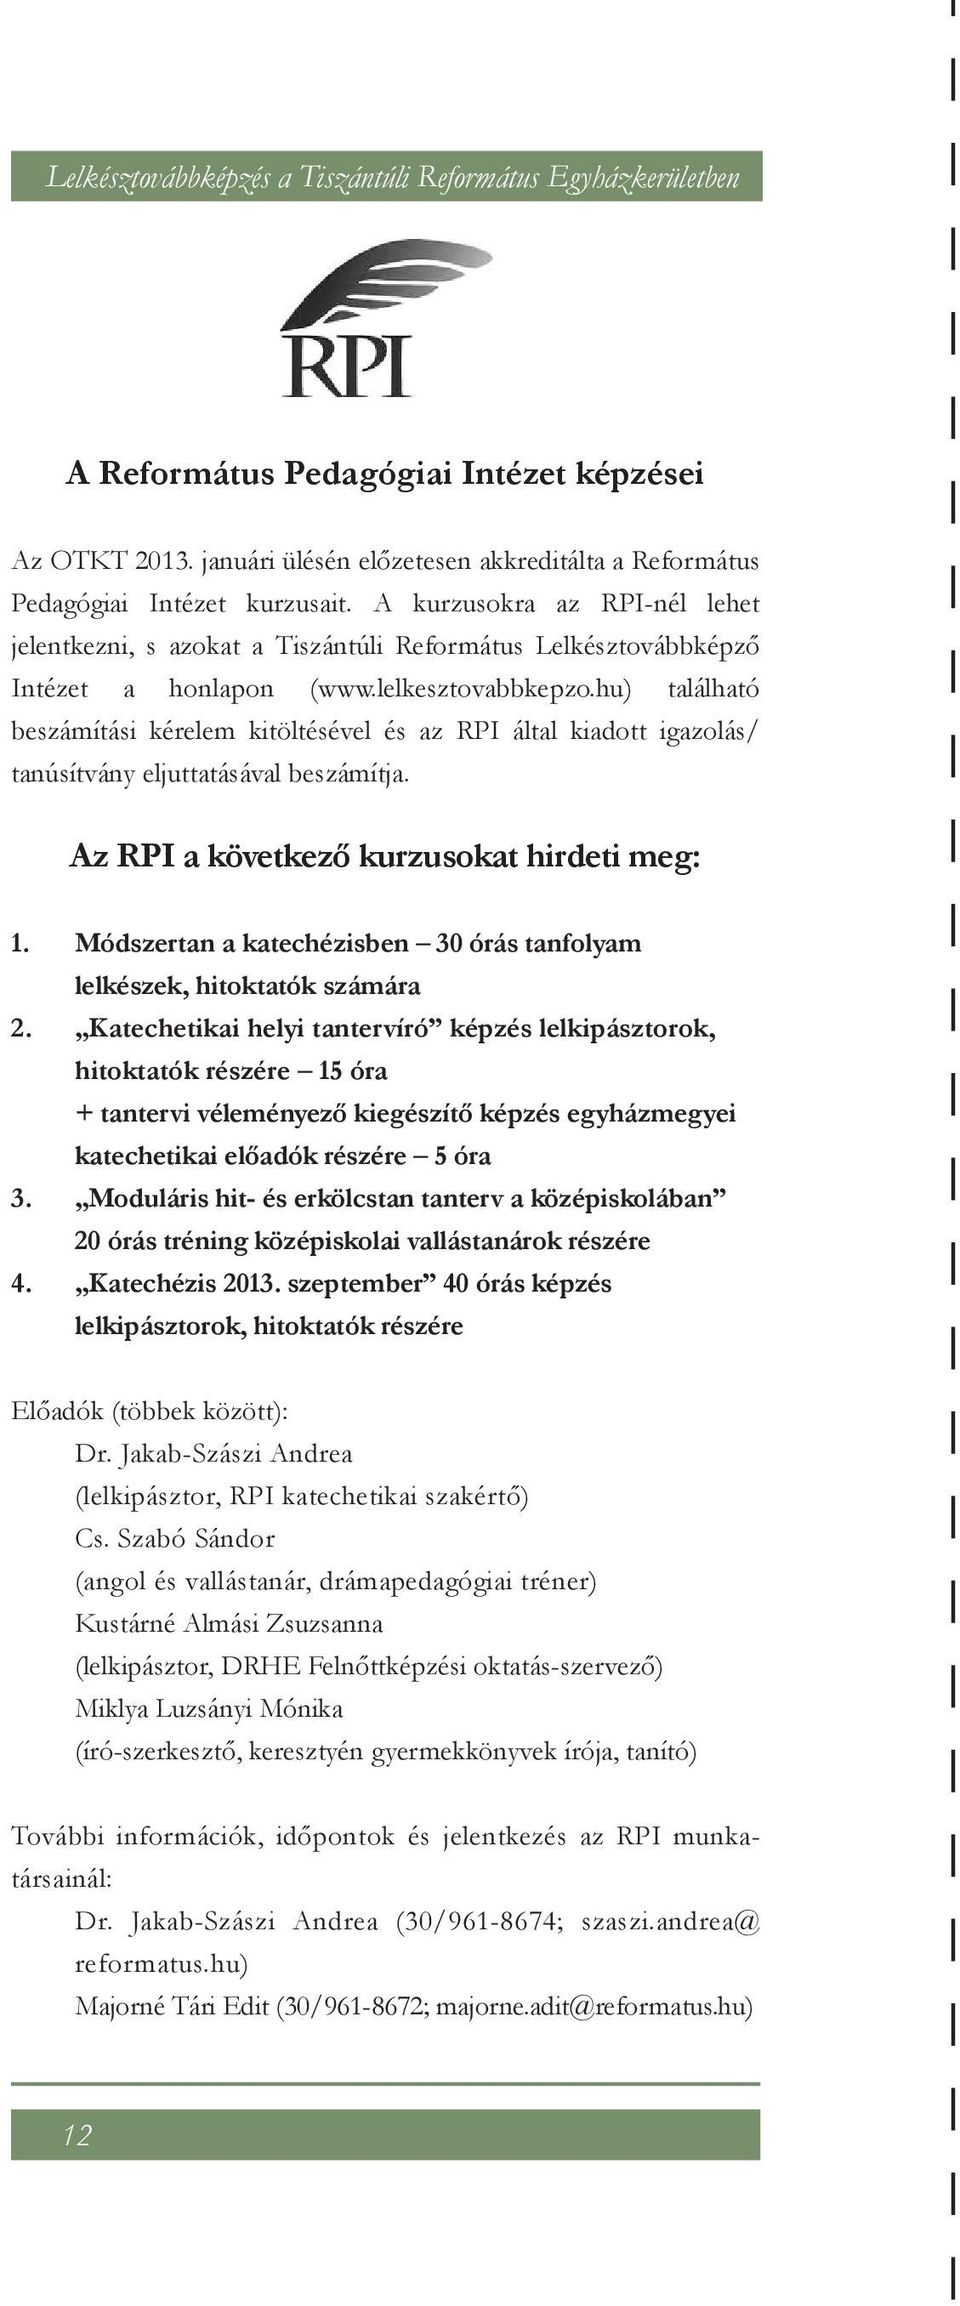 hu) található beszámítási kérelem kitöltésével és az RPI által kiadott igazolás/ tanúsítvány eljuttatásával beszámítja. Az RPI a következő kurzusokat hirdeti meg: 1. 2. 3. 4.